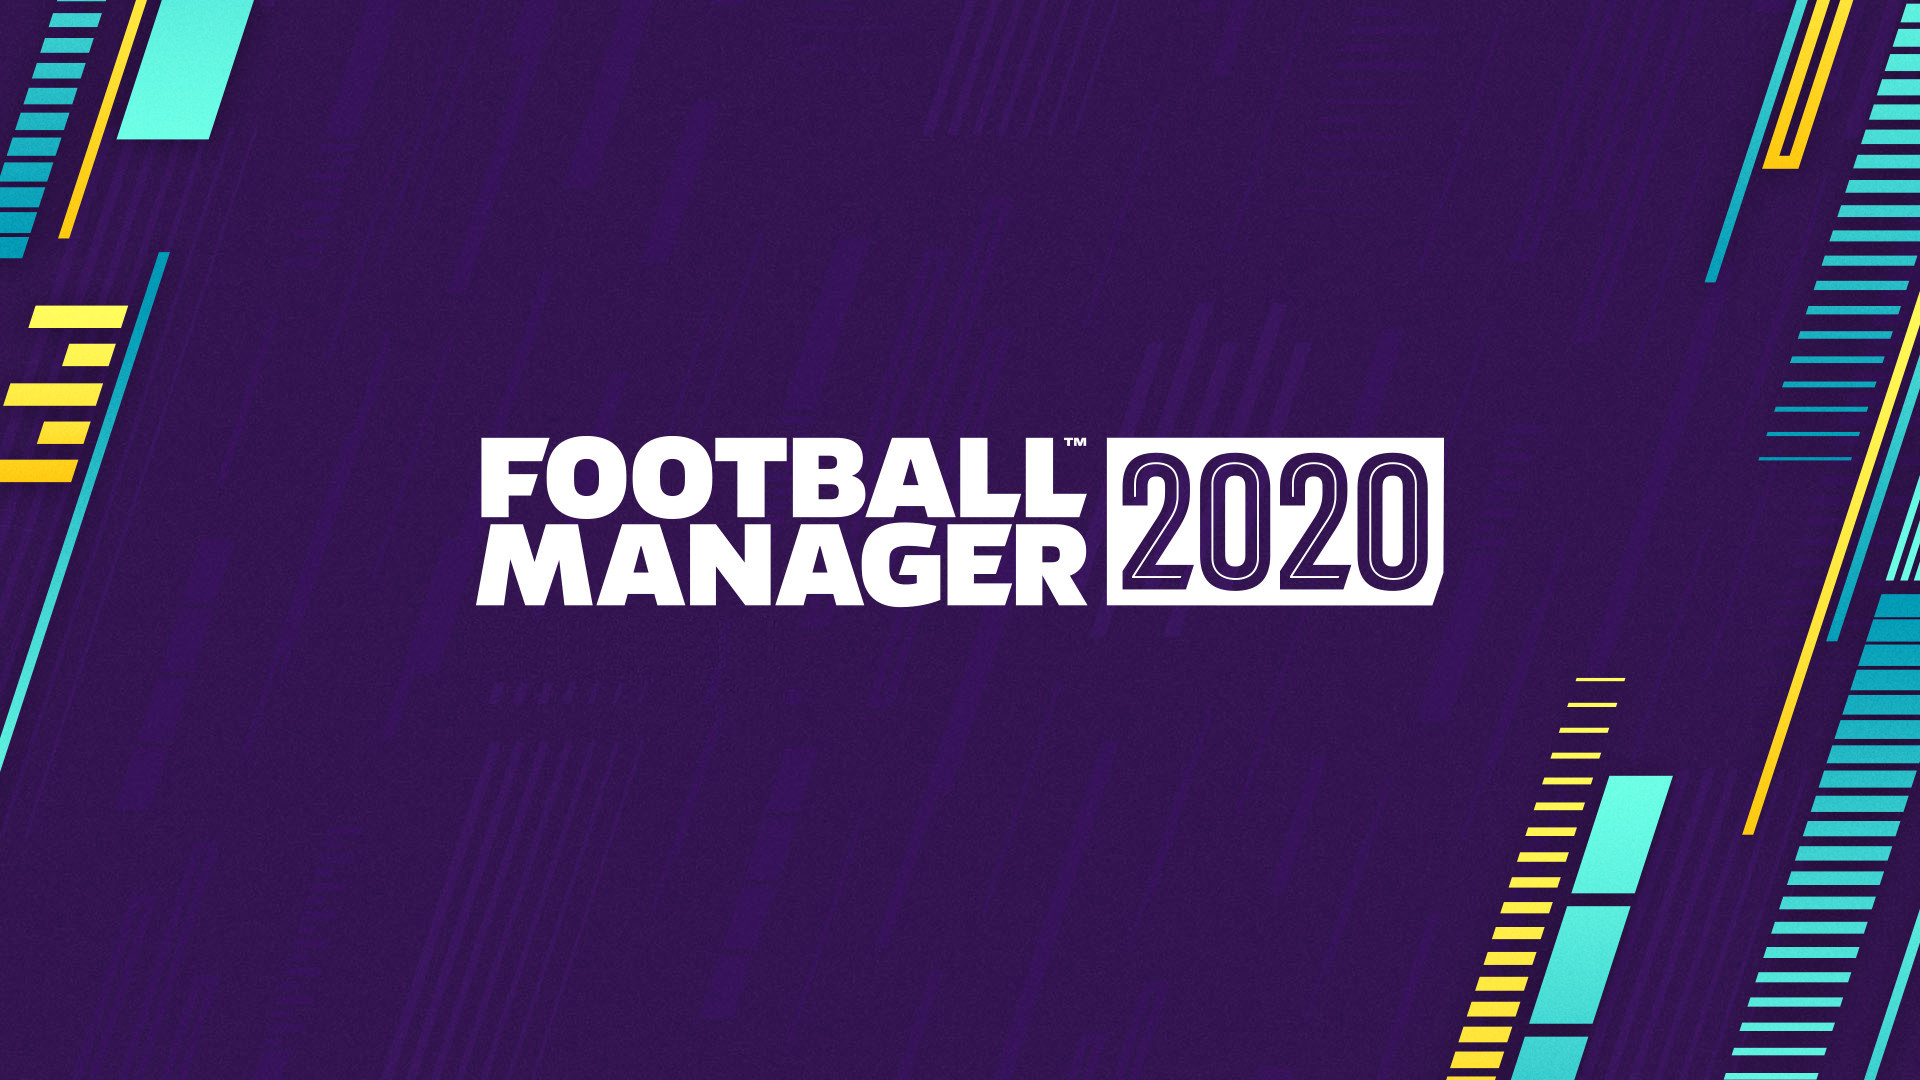 Risultati immagini per football manager 2020